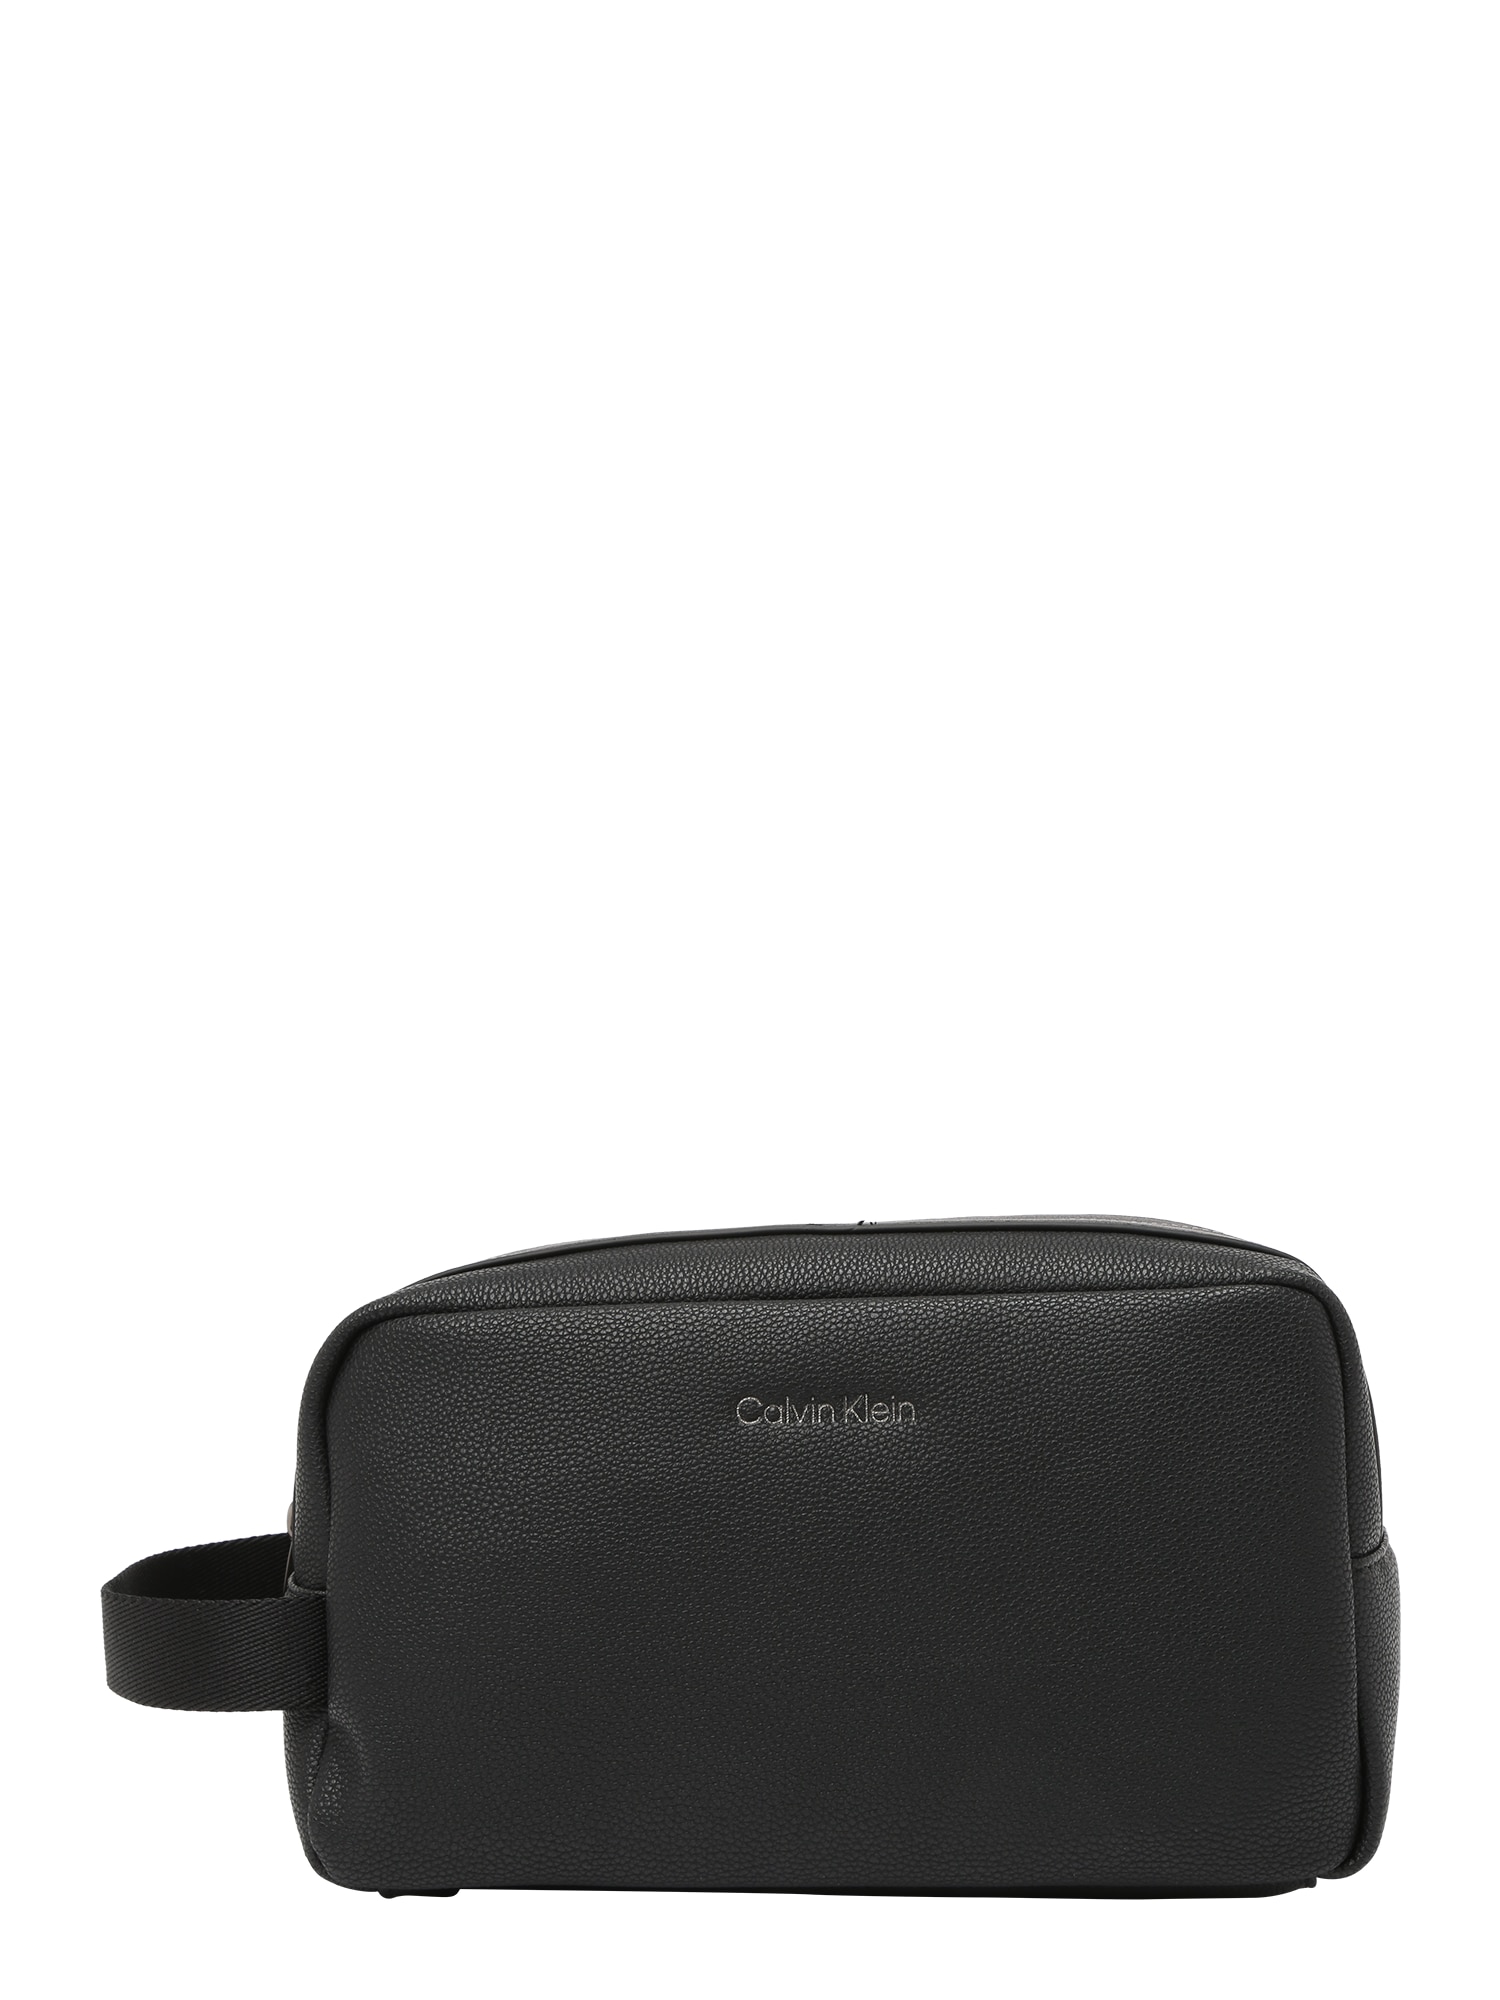 Calvin Klein Tualeto reikmenų / kosmetikos krepšys juoda